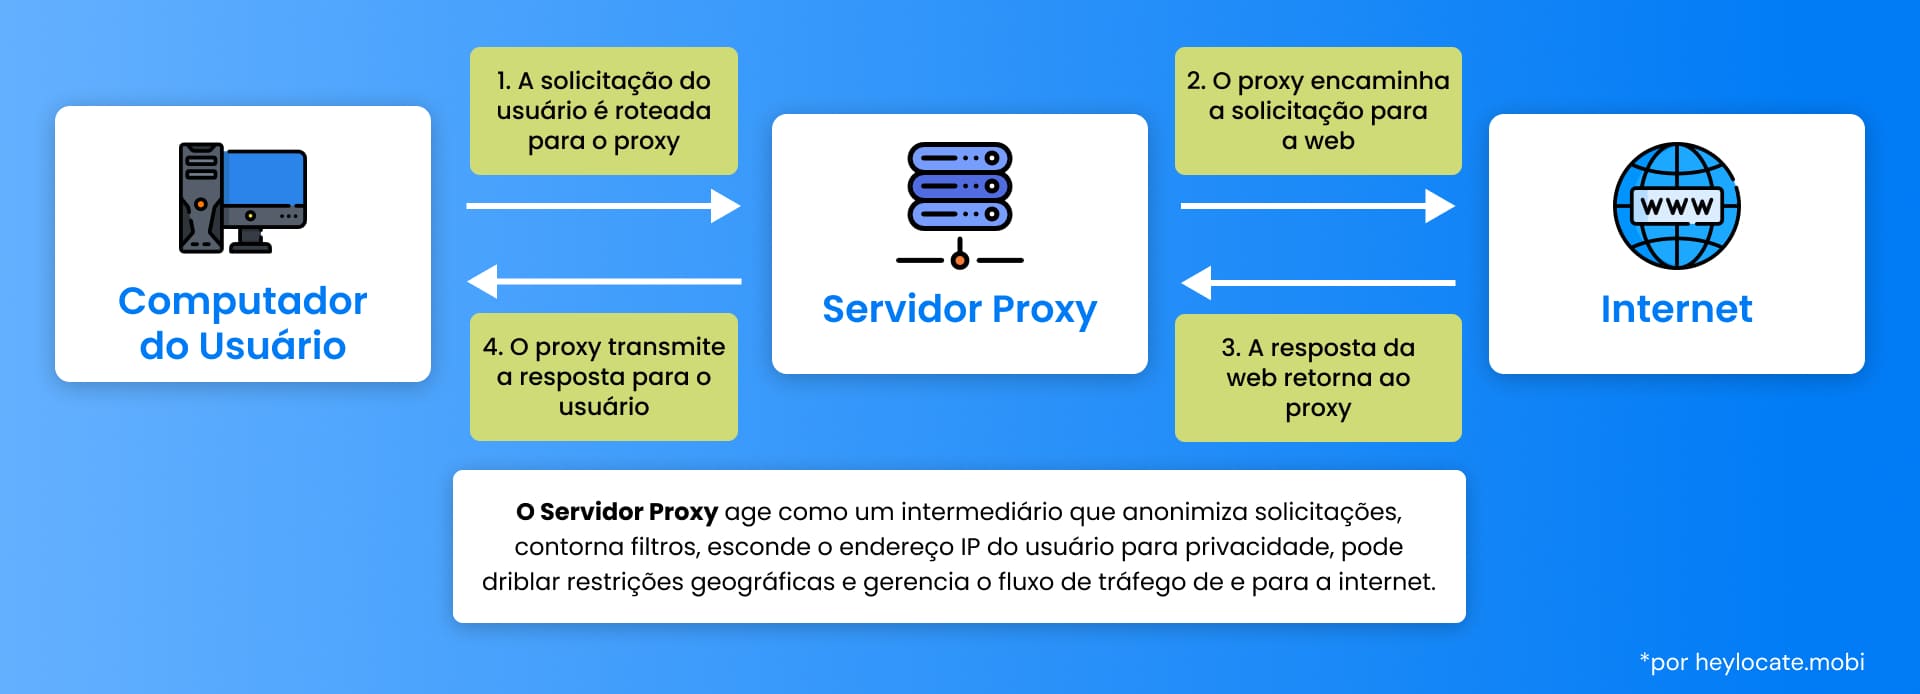 Um fluxograma que ilustra a função de um servidor proxy no processamento da solicitação de um usuário à Internet, detalhando as etapas do computador do usuário até a Web e vice-versa